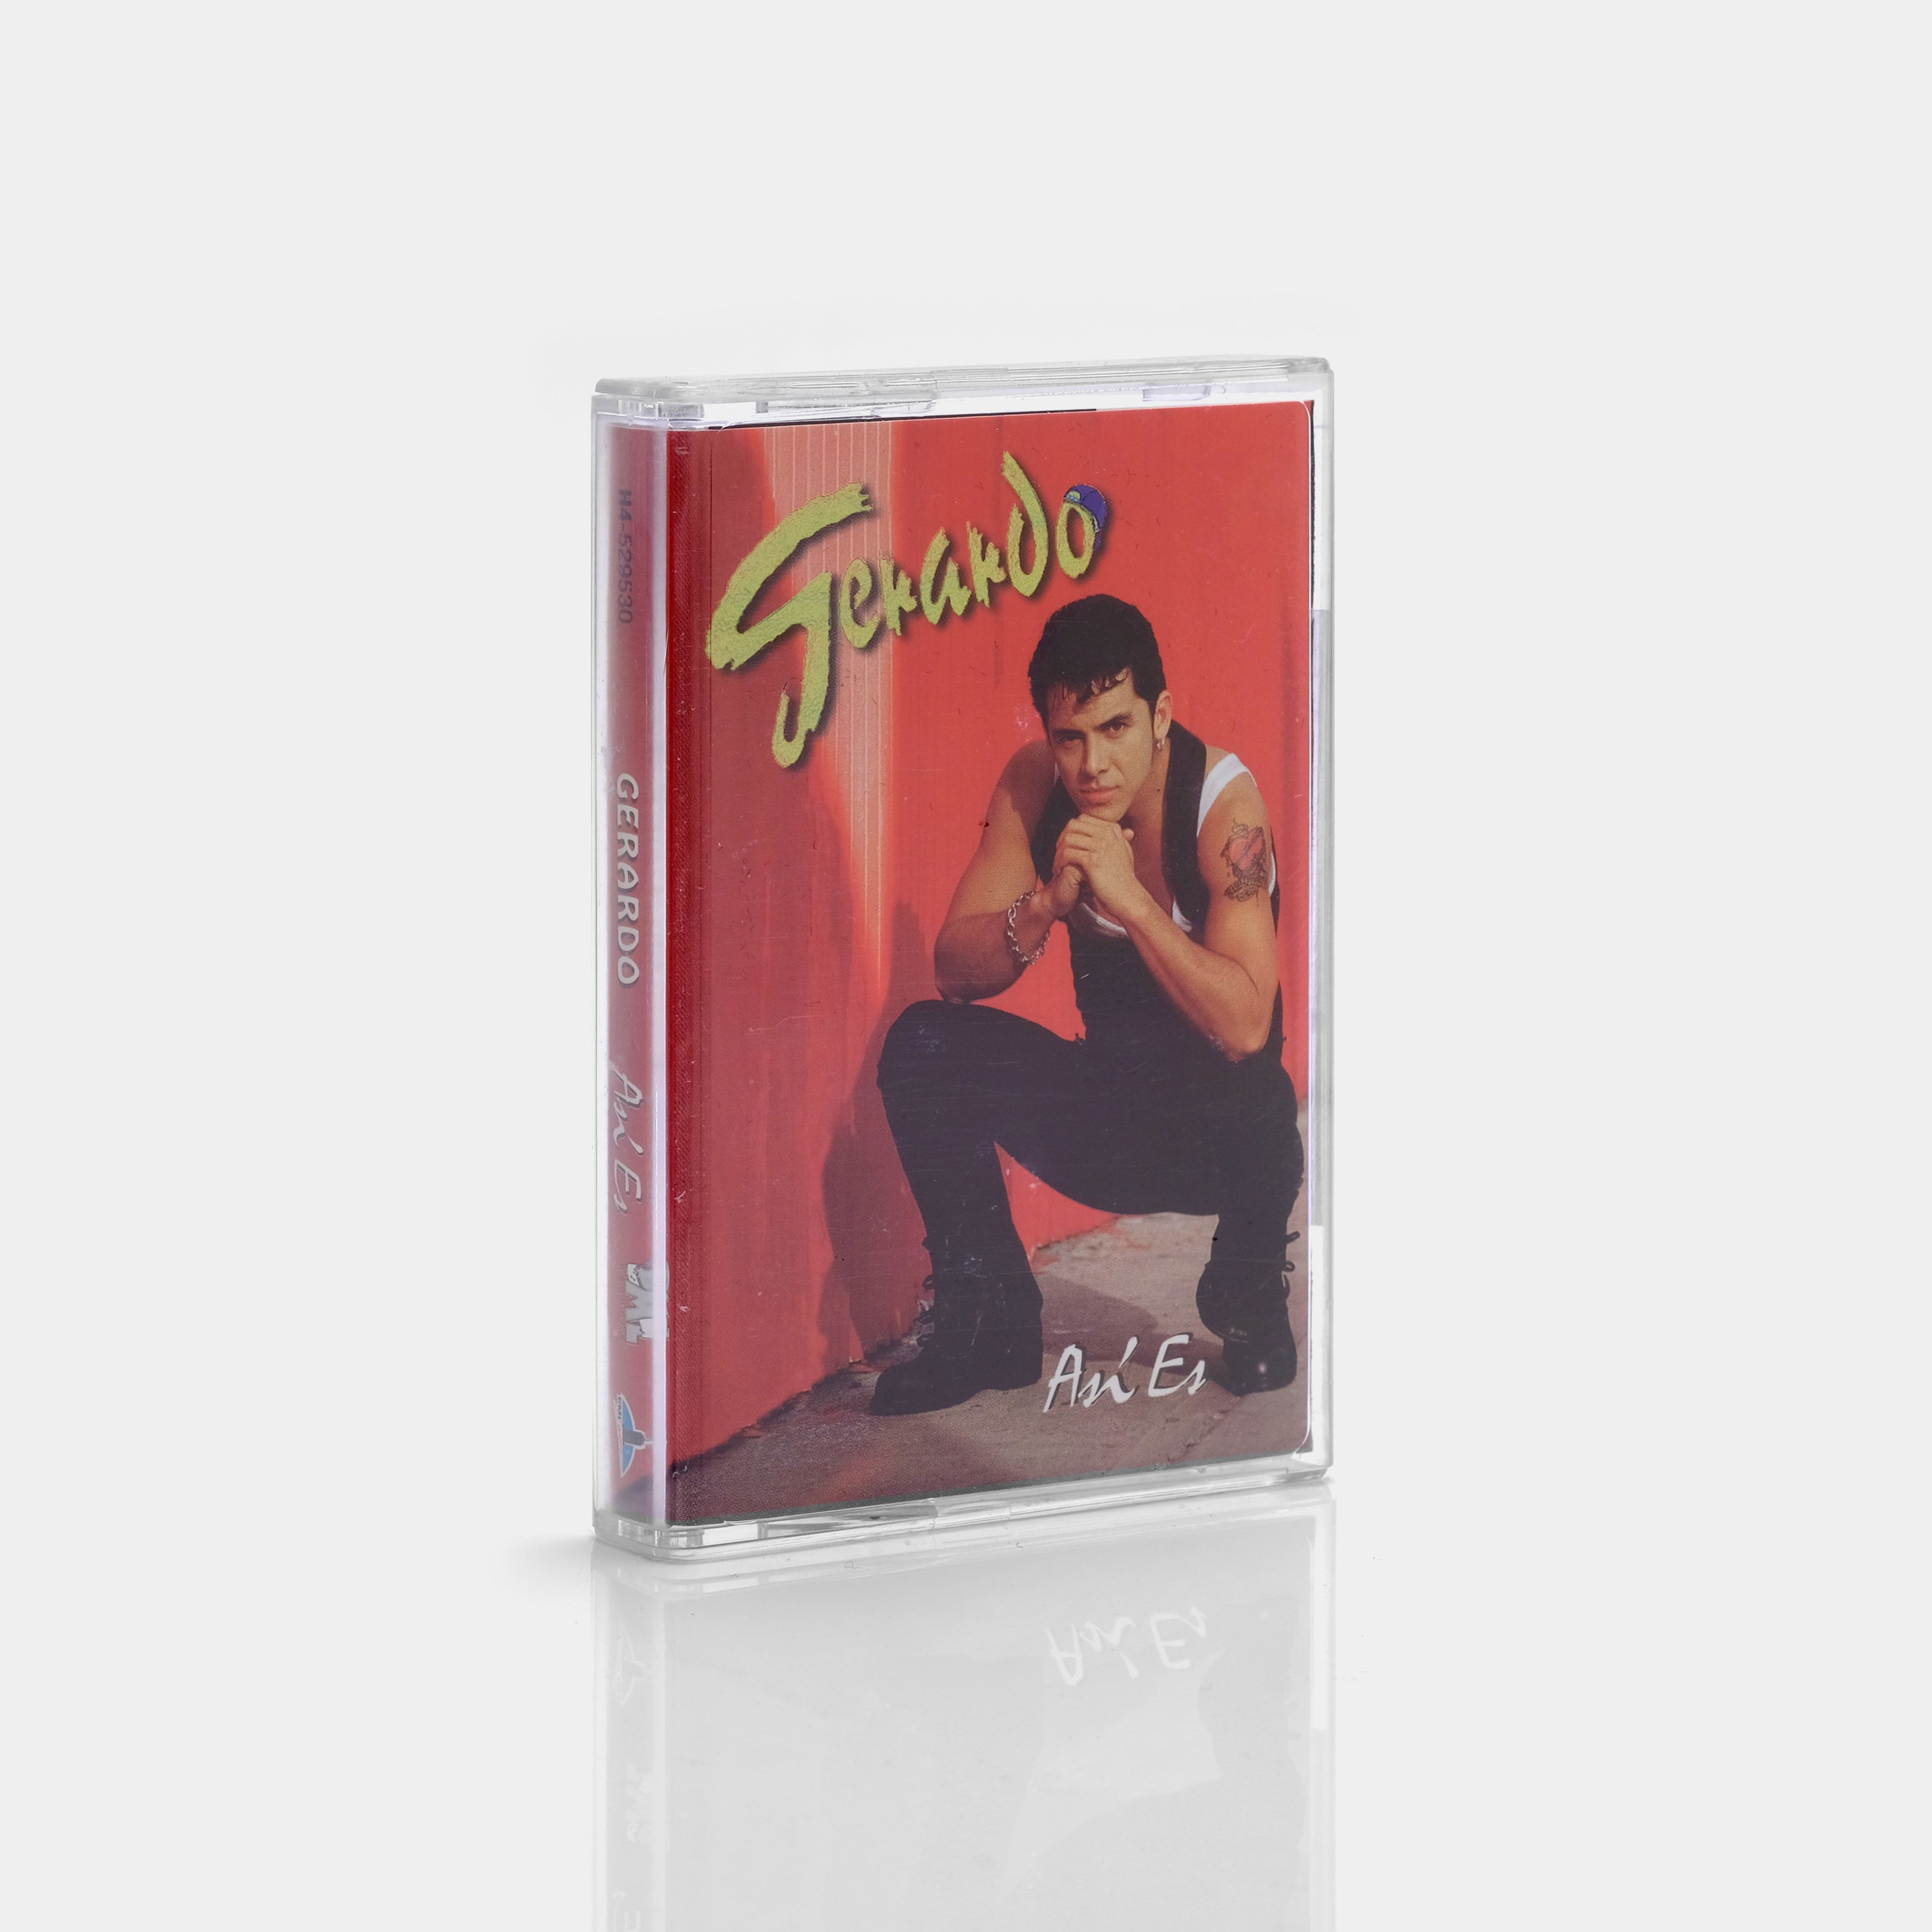 Gerardo - Así Es Cassette Tape